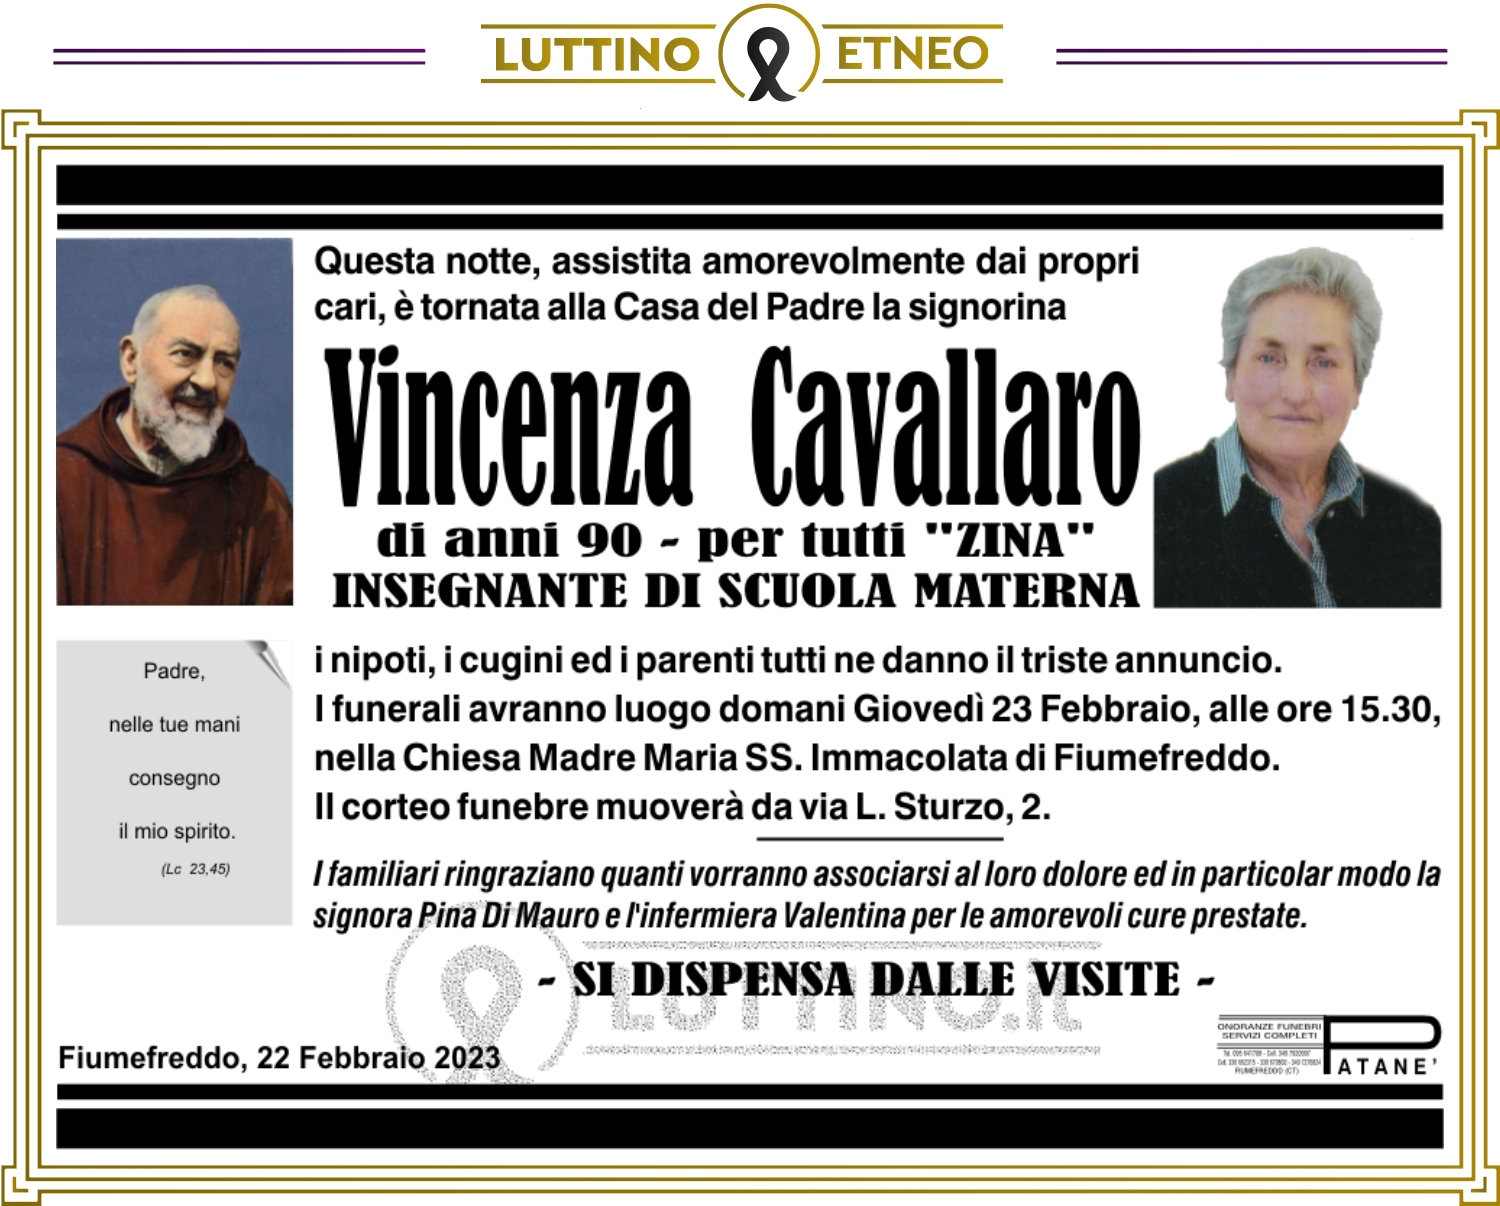 Vincenza Cavallaro